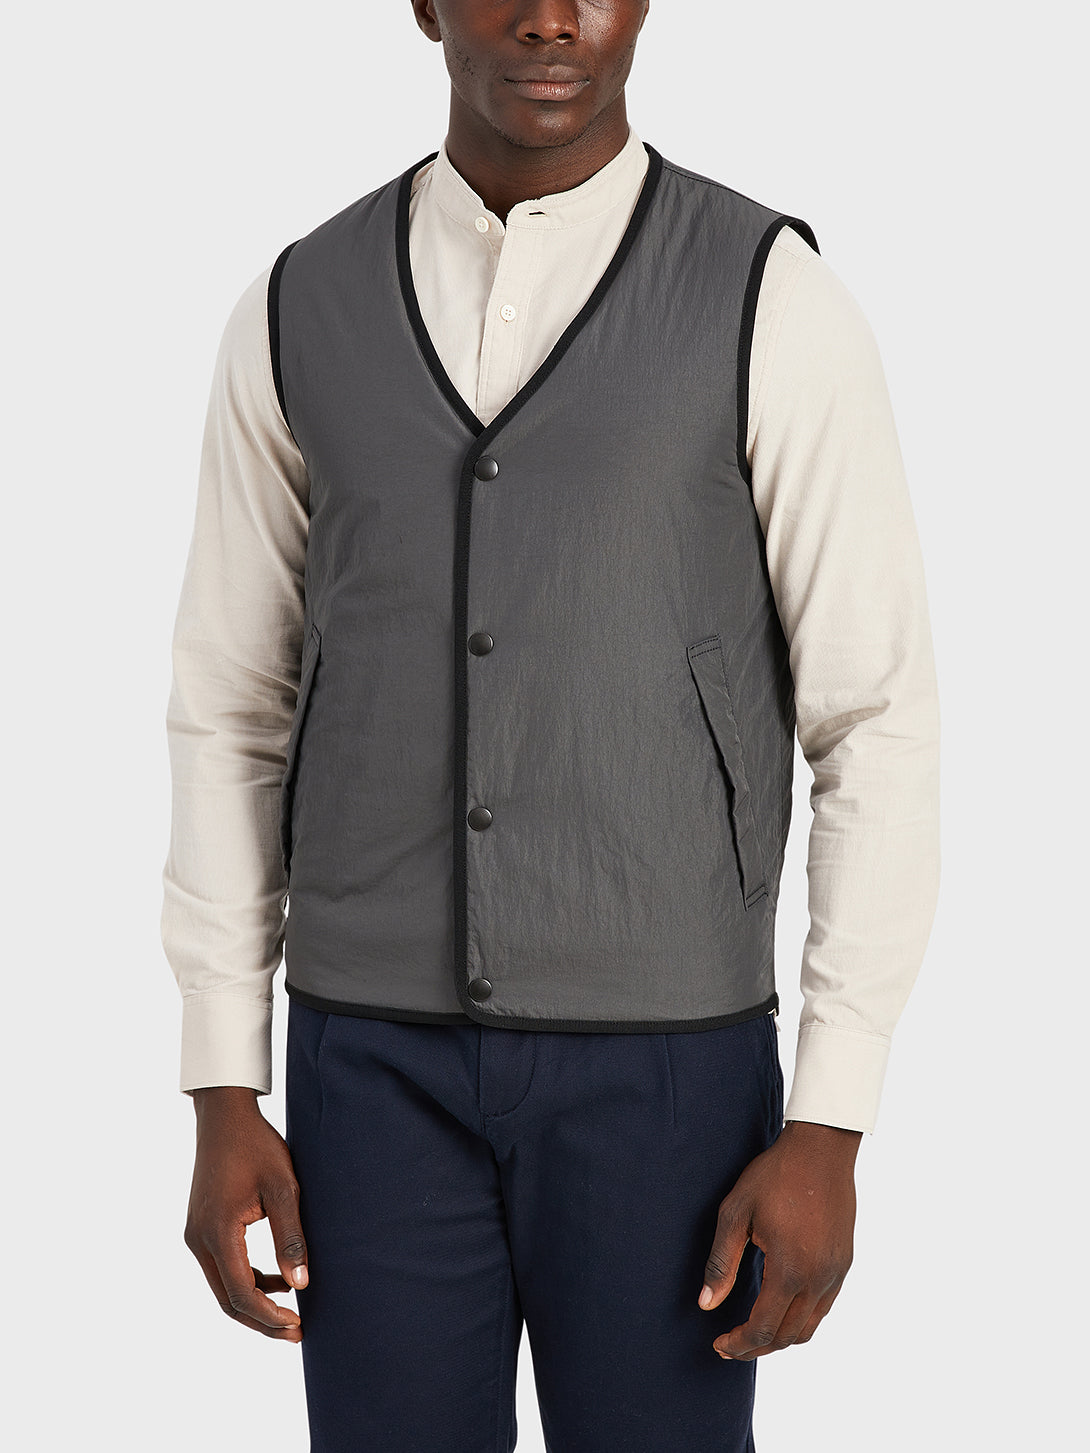 ONS Clothing Men's vest in DK GREY black friday deals